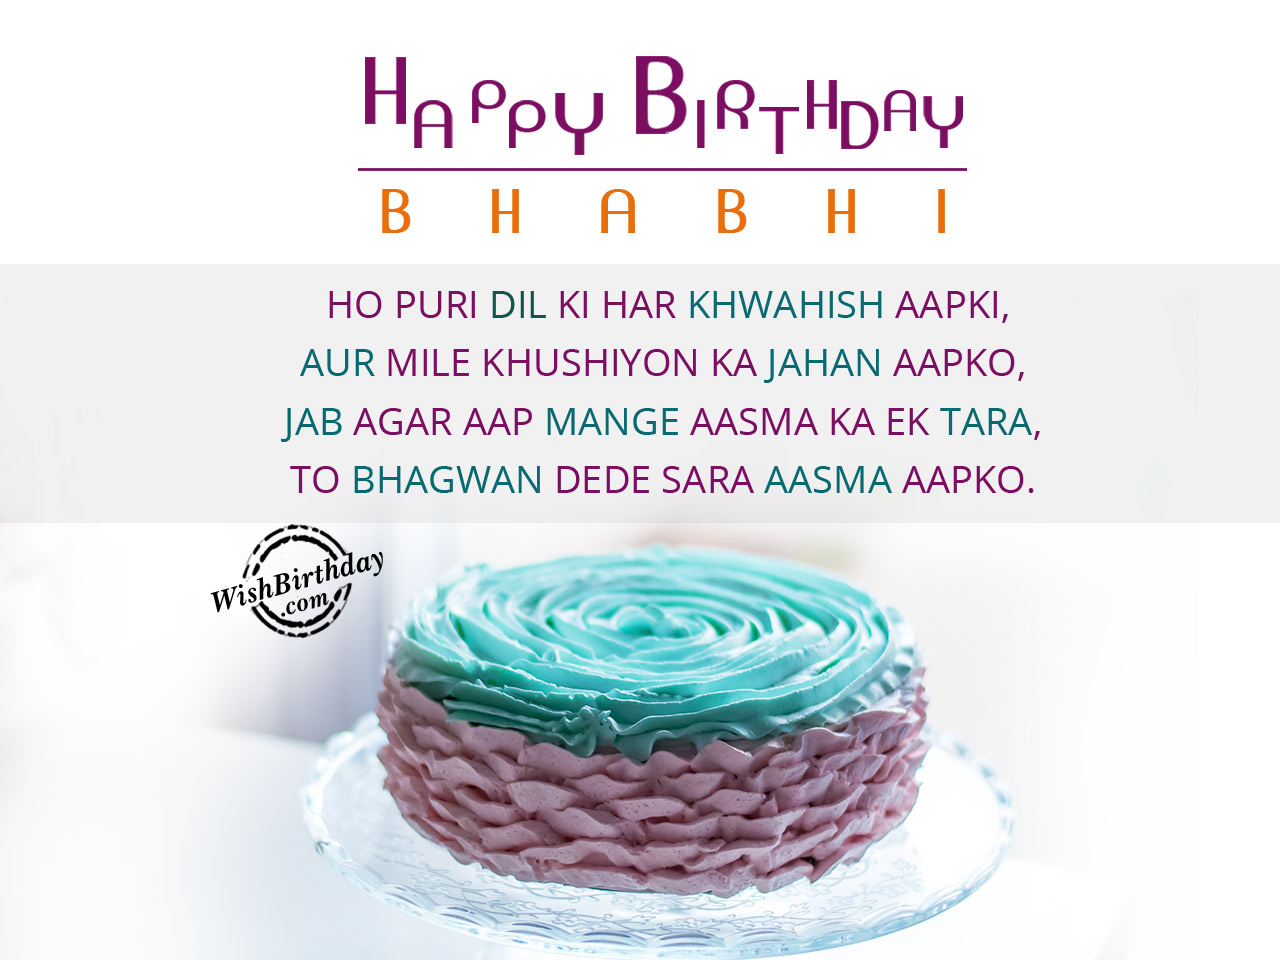 Ho puri dil ki har khawahish aapki, Happy Birthday Bhabi ...